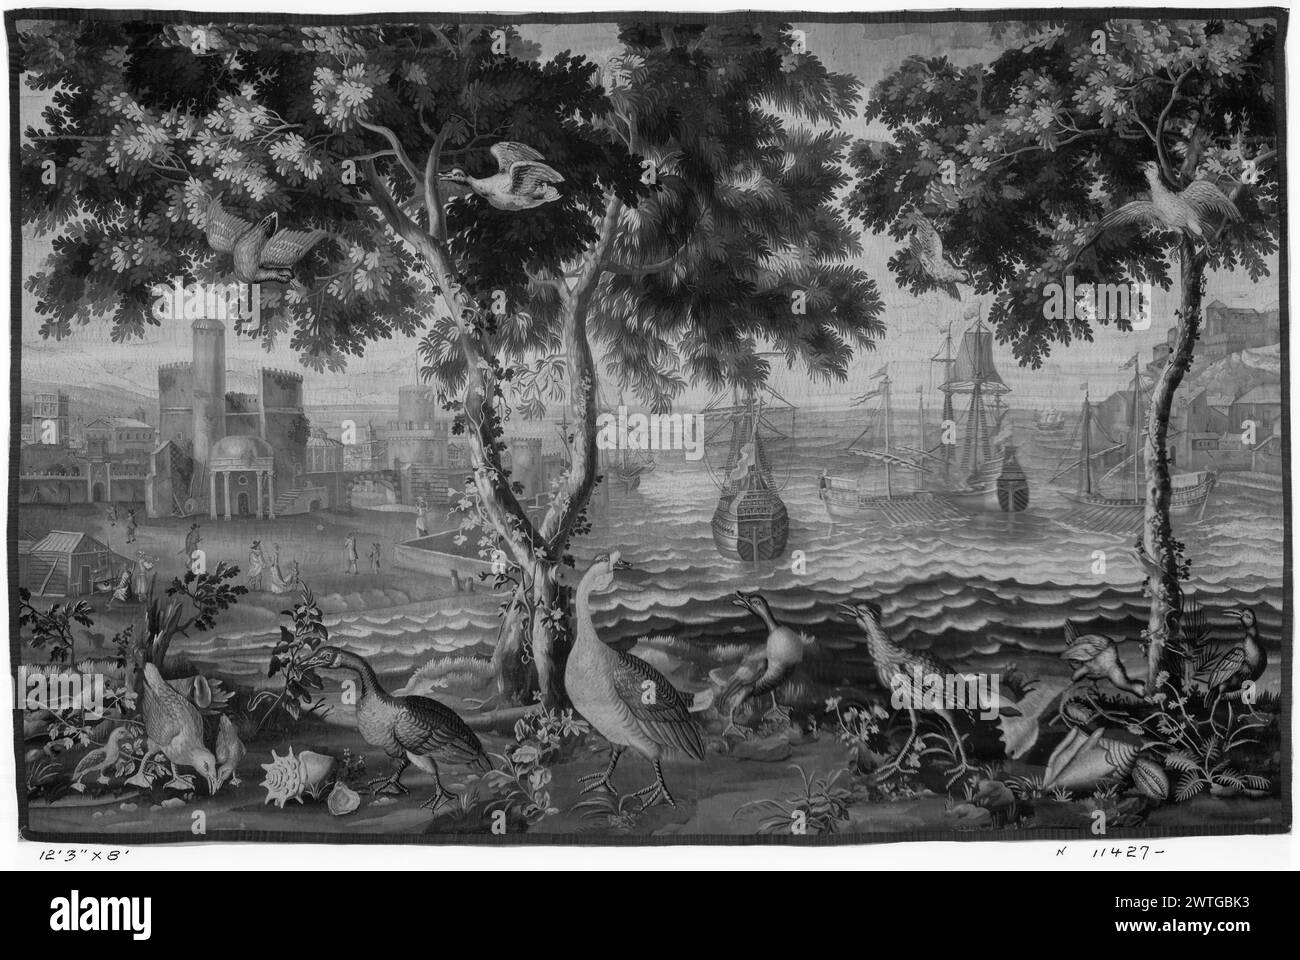 Paesaggio con uccelli esotici e crostacei vicino al porto. Kerchove, Joseph van den (fiammingo, b.1667-d.1724) (autore del disegno) [pittore] Campion, Adrien (francese, b.1676) (autore del disegno) [pittore] Mérou, Noël Antoine de (francese, atto 1722-1734) (laboratorio) [tessitore] c. 1723 arazzi dimensioni: H 8' x W 12'3' arazzi materiali/tecniche: Cultura sconosciuta: Beauvais Co Una varietà di uccelli e altri uccelli tra conchiglie, piante selvatiche e alberi sulla riva in primo piano; grandi navi vicino alla città portuale fortificata su entrambi i lati della composizione con figure umane Foto Stock